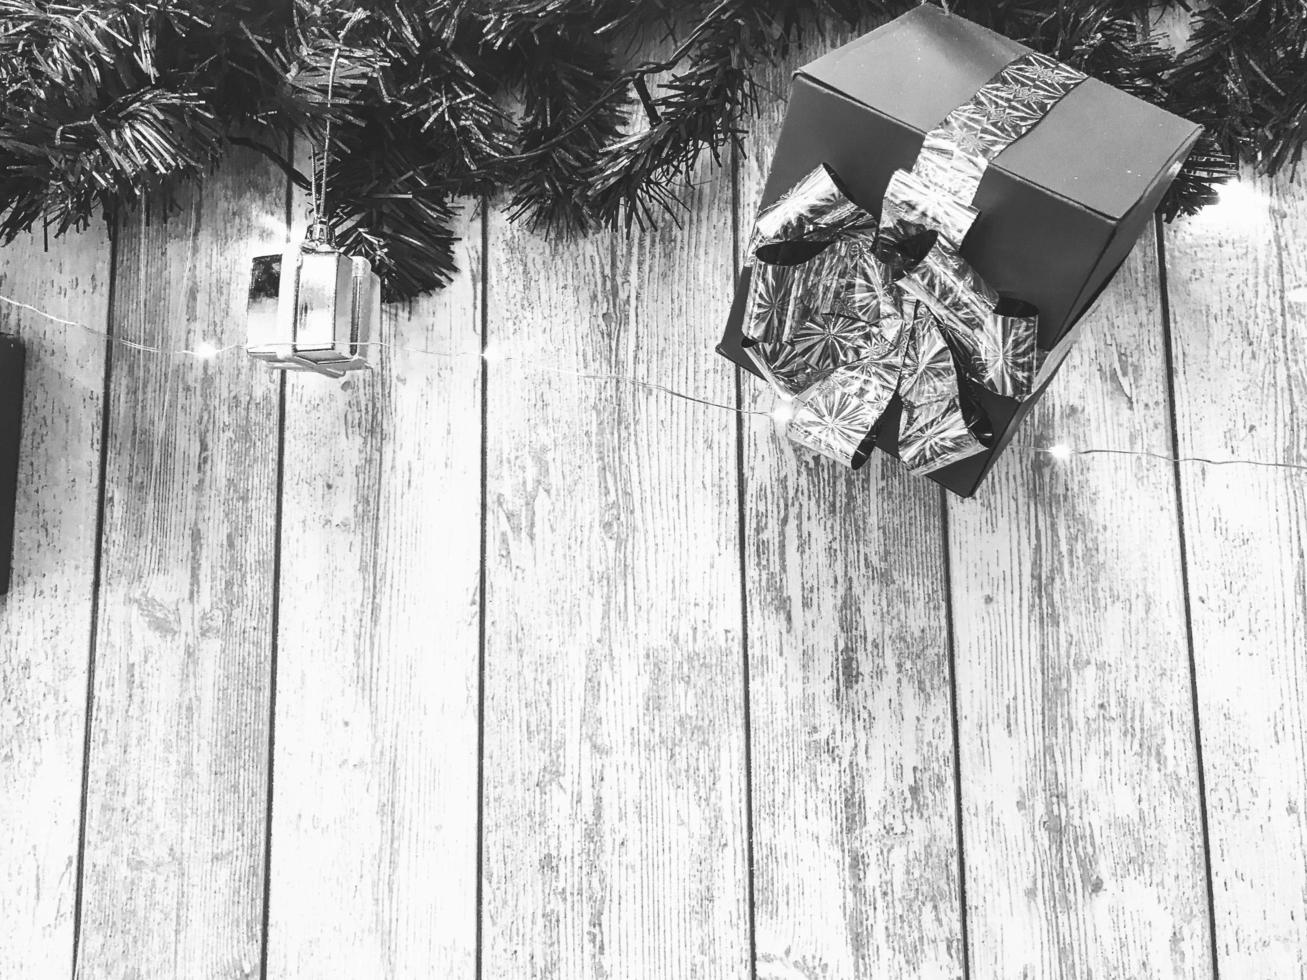 kleine niedliche schwarz-weiße weihnachtsgeschenkboxen, weihnachten, neujahrsdekoration auf dem hintergrund von weihnachtsbaumzweigen mit nadeln und leuchtenden girlanden auf vertikalen holzbrettern mit nähten foto